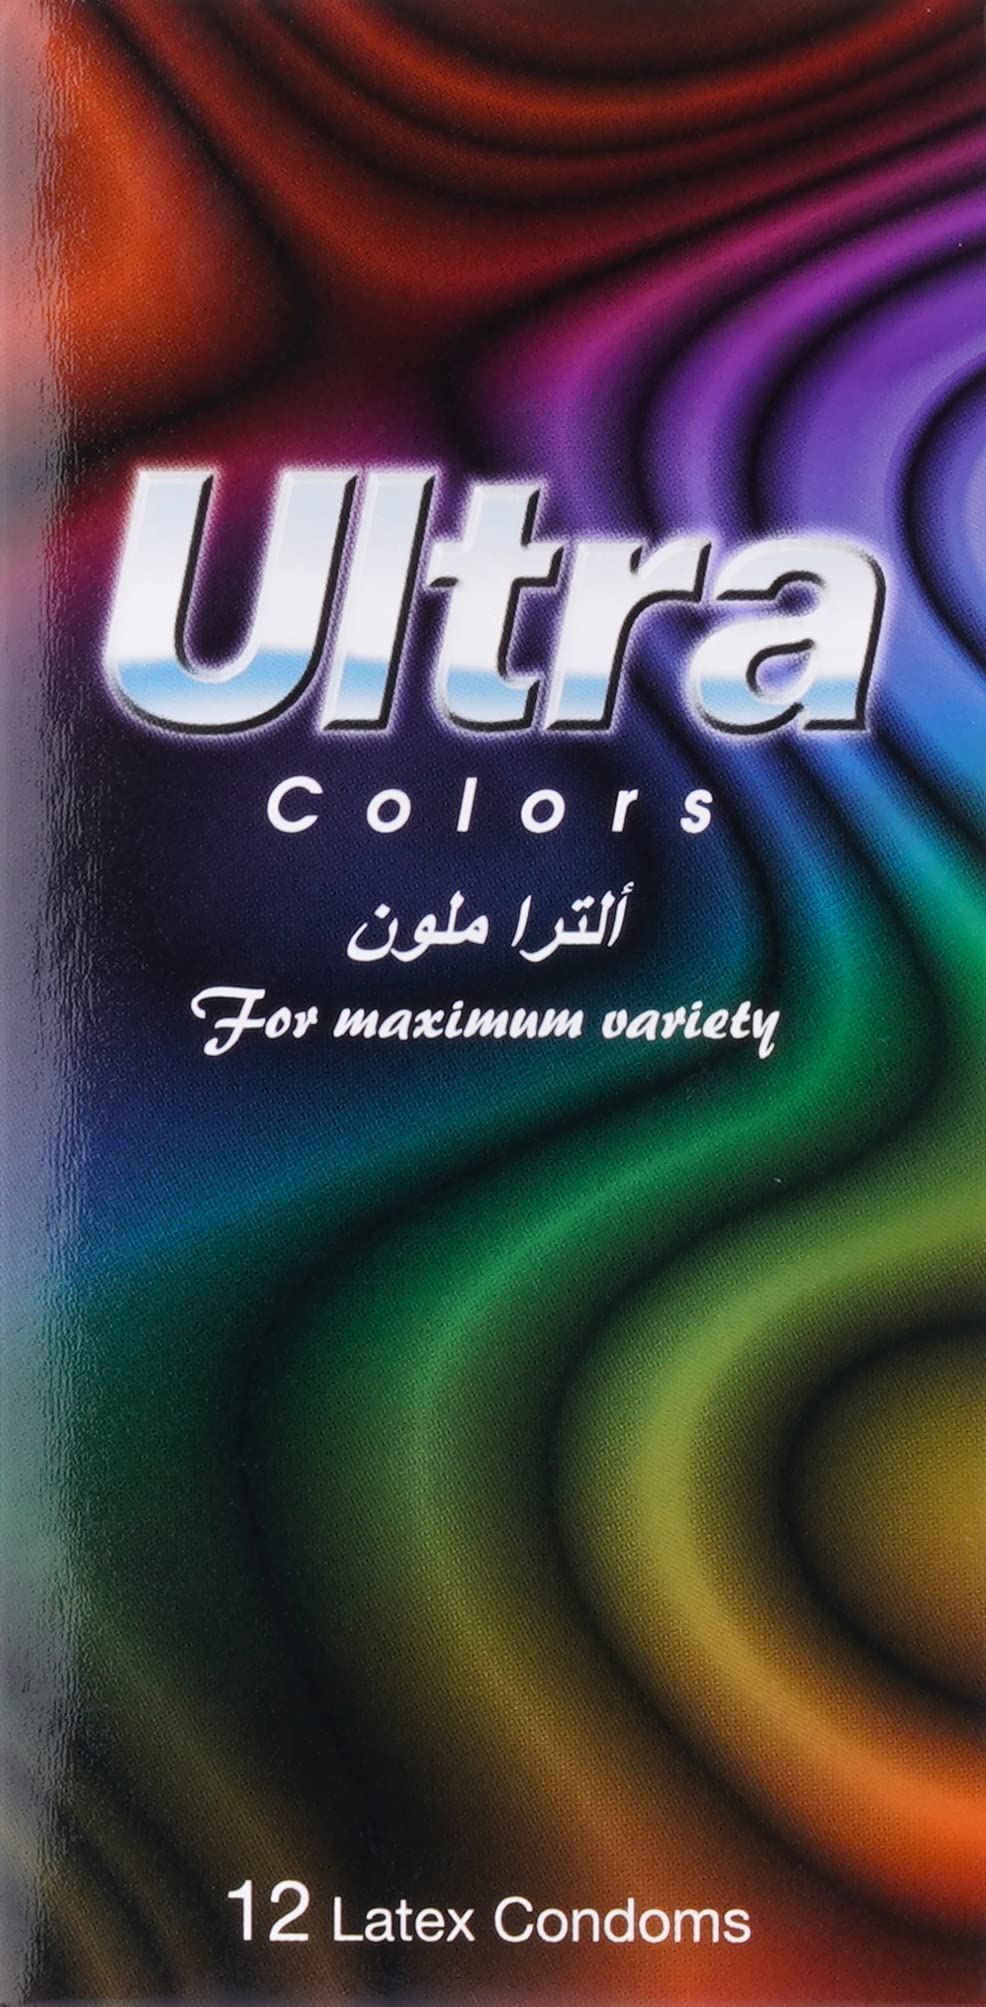 Ultra Condom Colors 12Pk